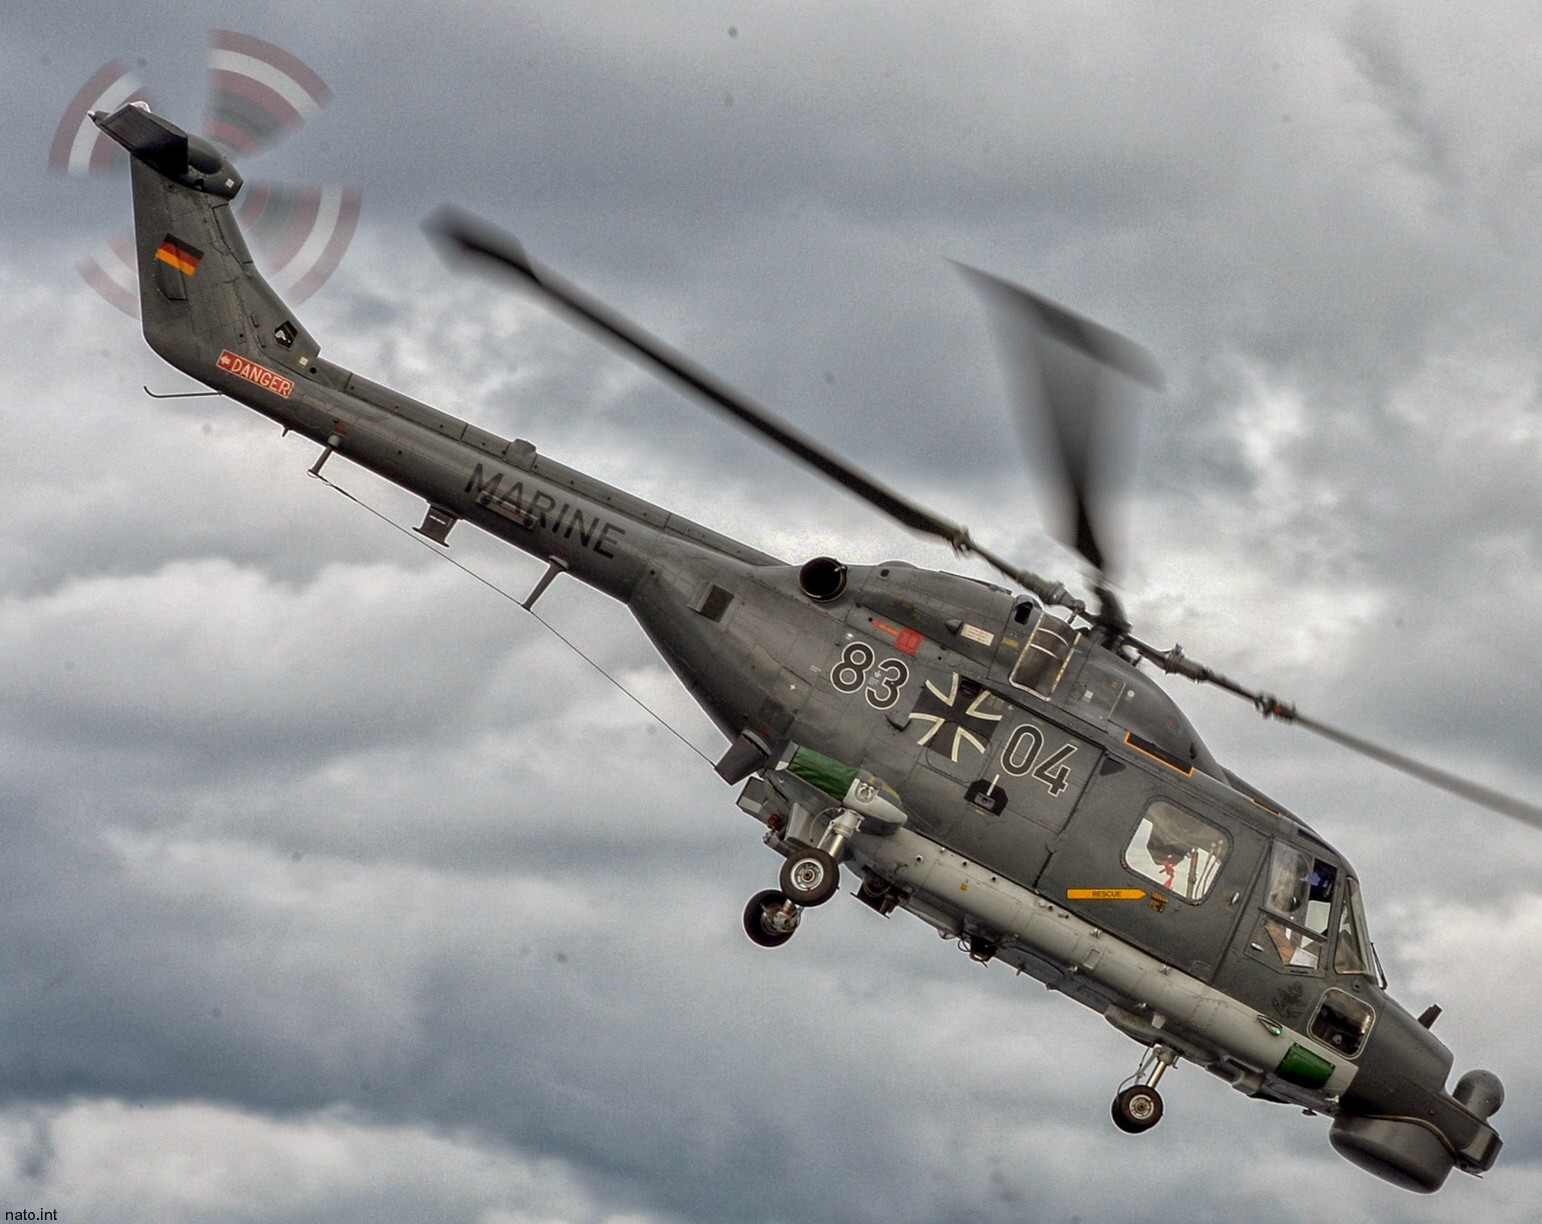 sea lynx mk.88a westland naval helicopter german navy deutsche marine 72